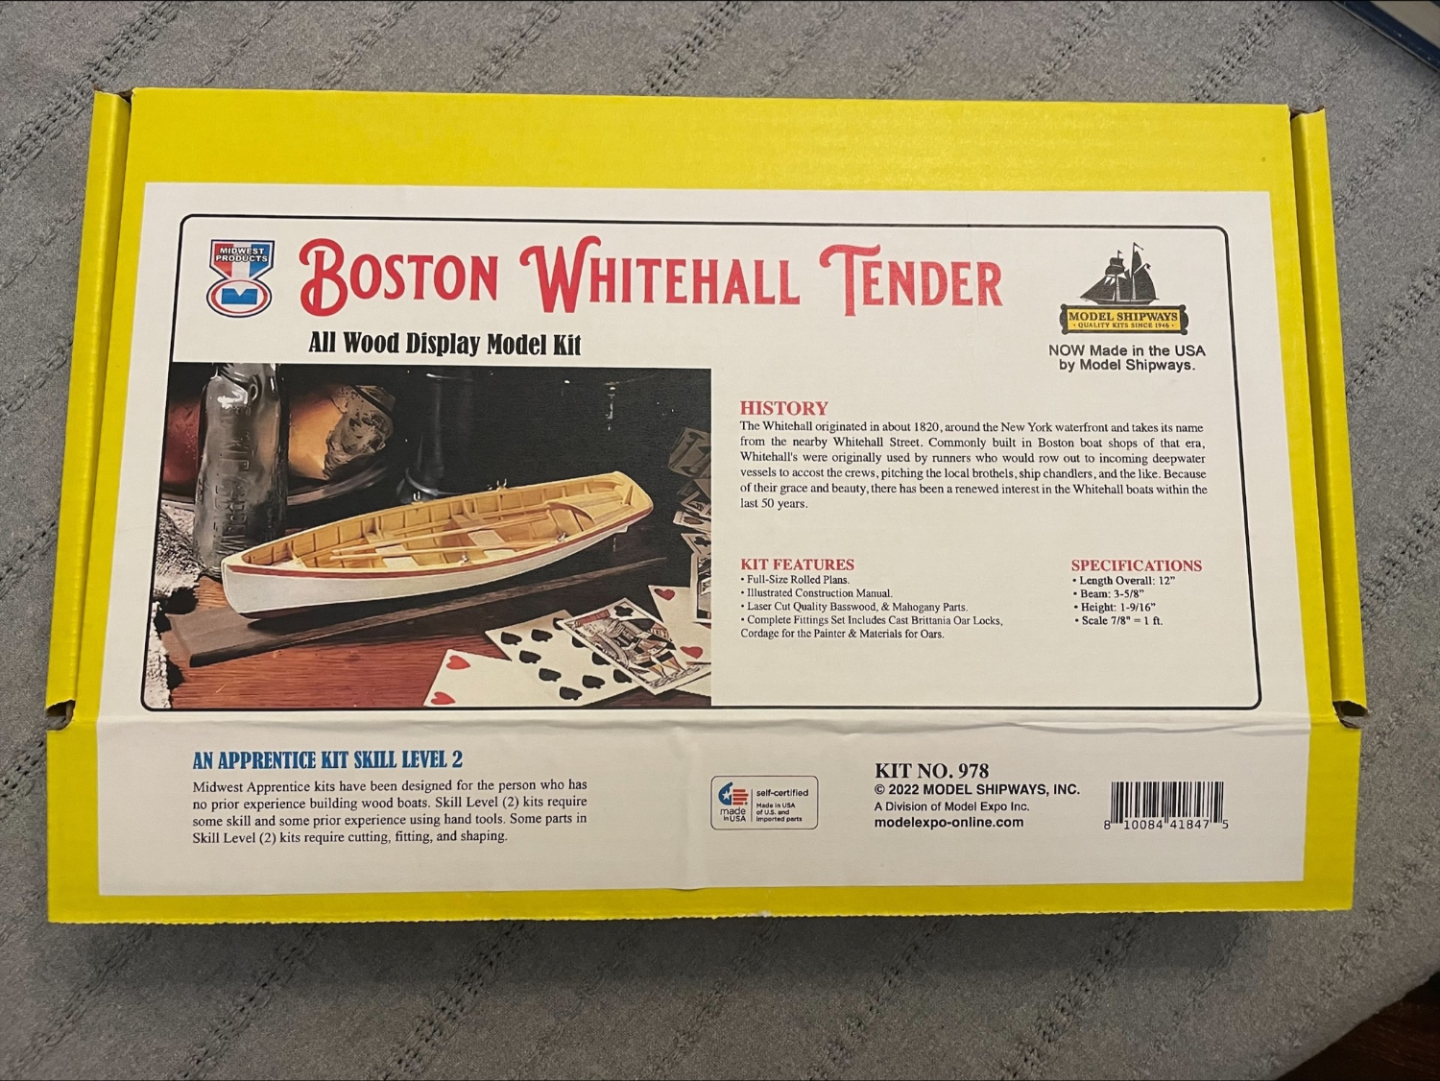 BostonWhitehallTender-box.png